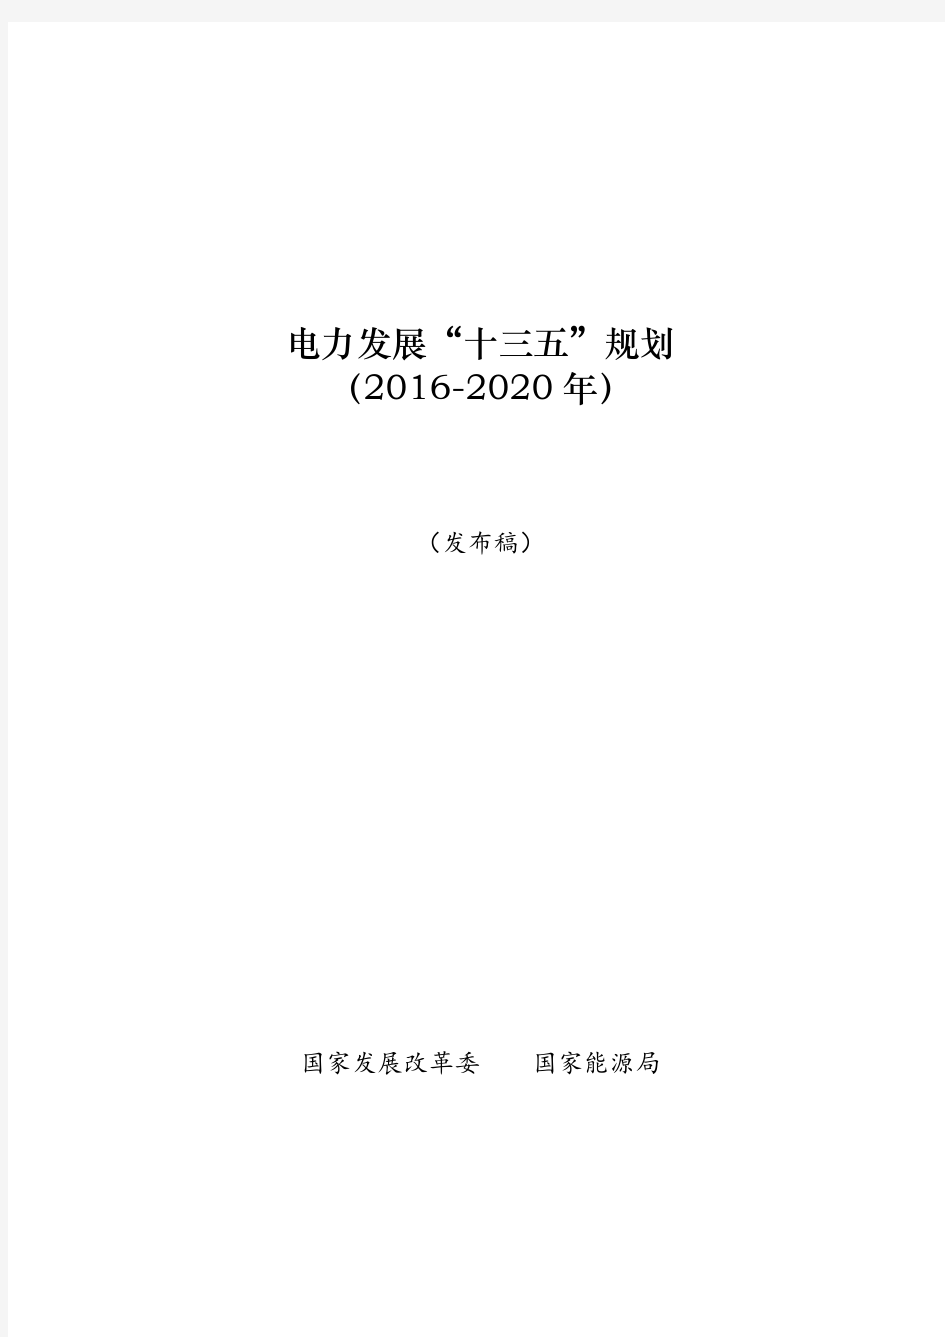 电力发展“十三五”规划(2016-2020年)